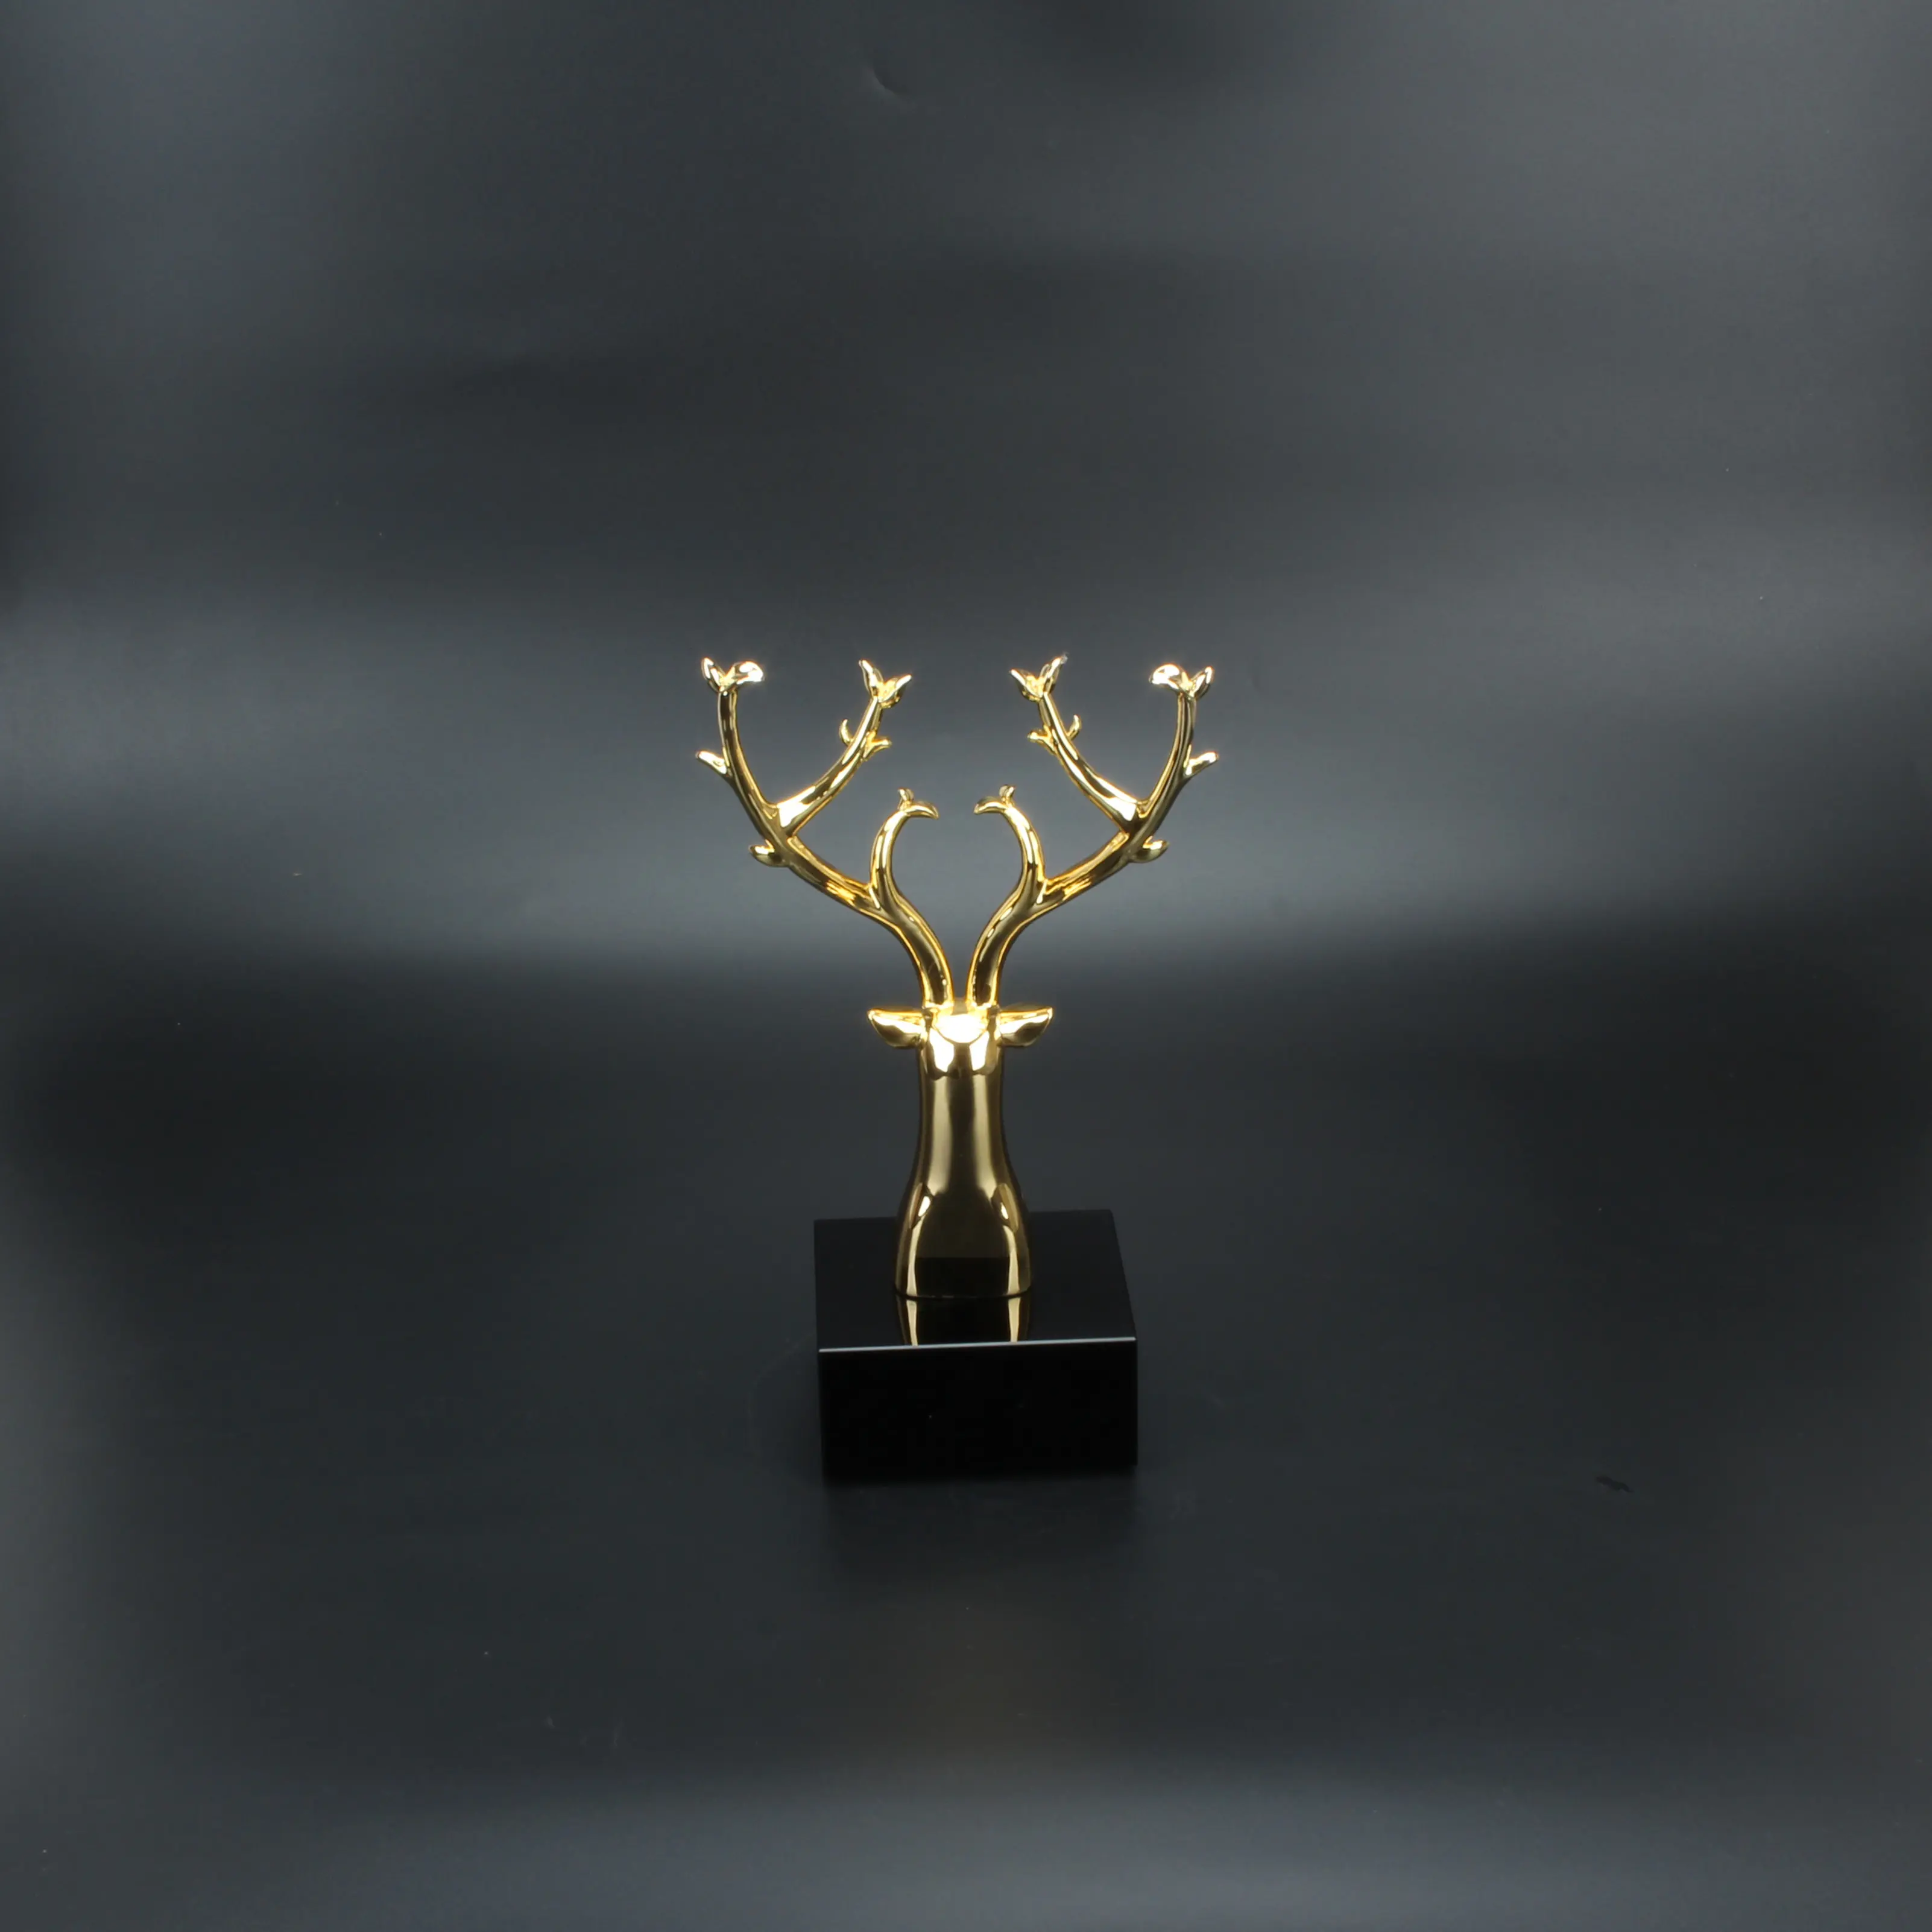 Hitop metallo trofeo di cervo statuette casa artigianato oro placcato stella decorazioni sculture regalo artigianale personalizzato